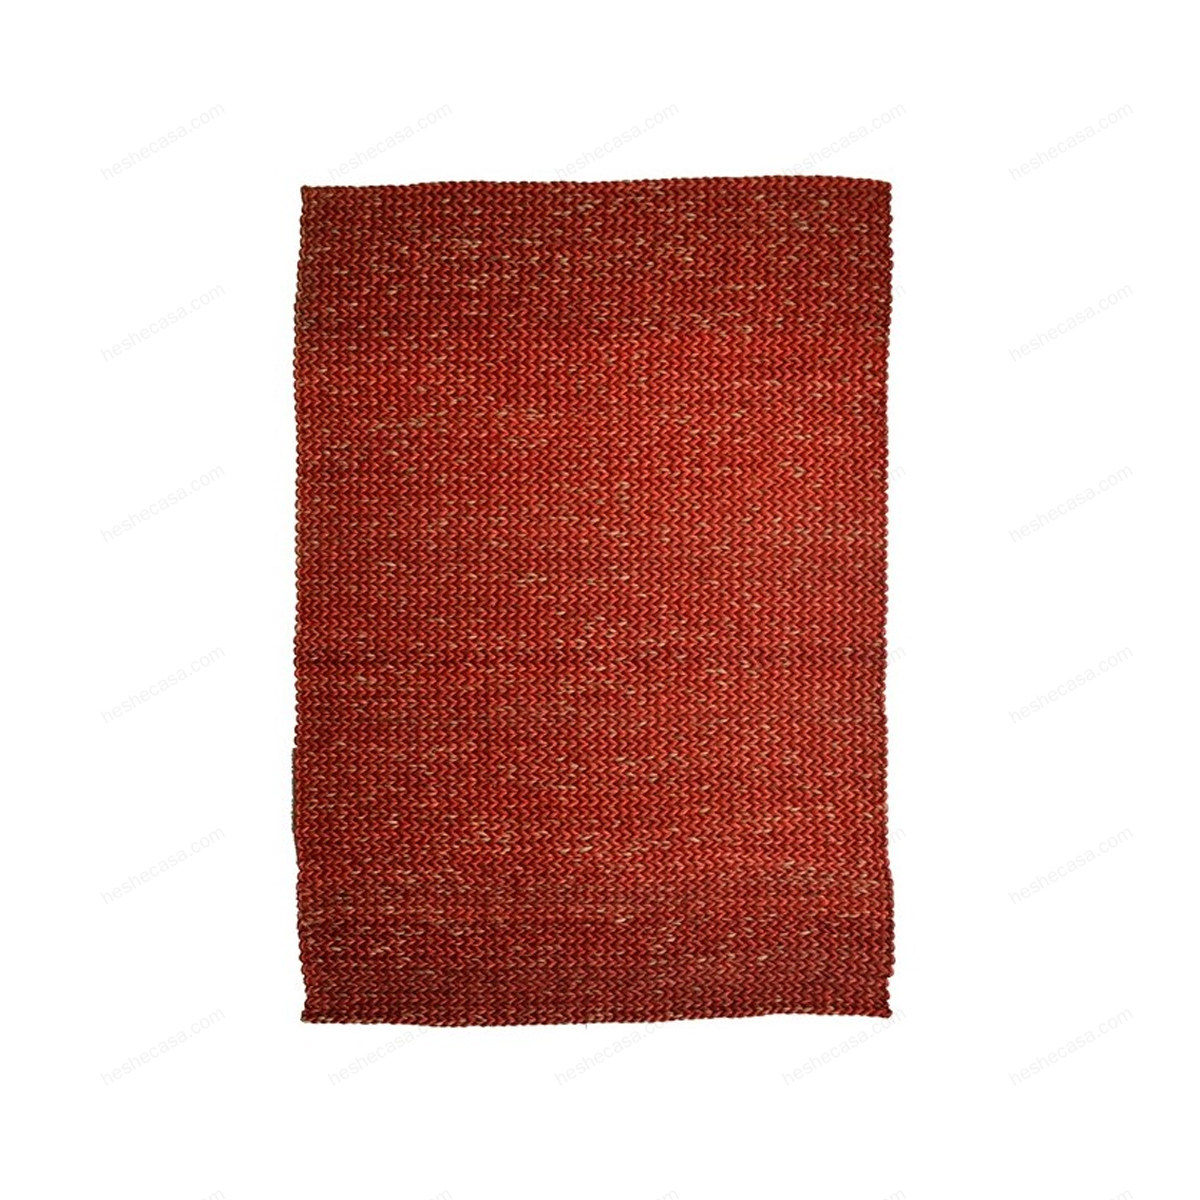 Stuoie Jumbo Red地毯